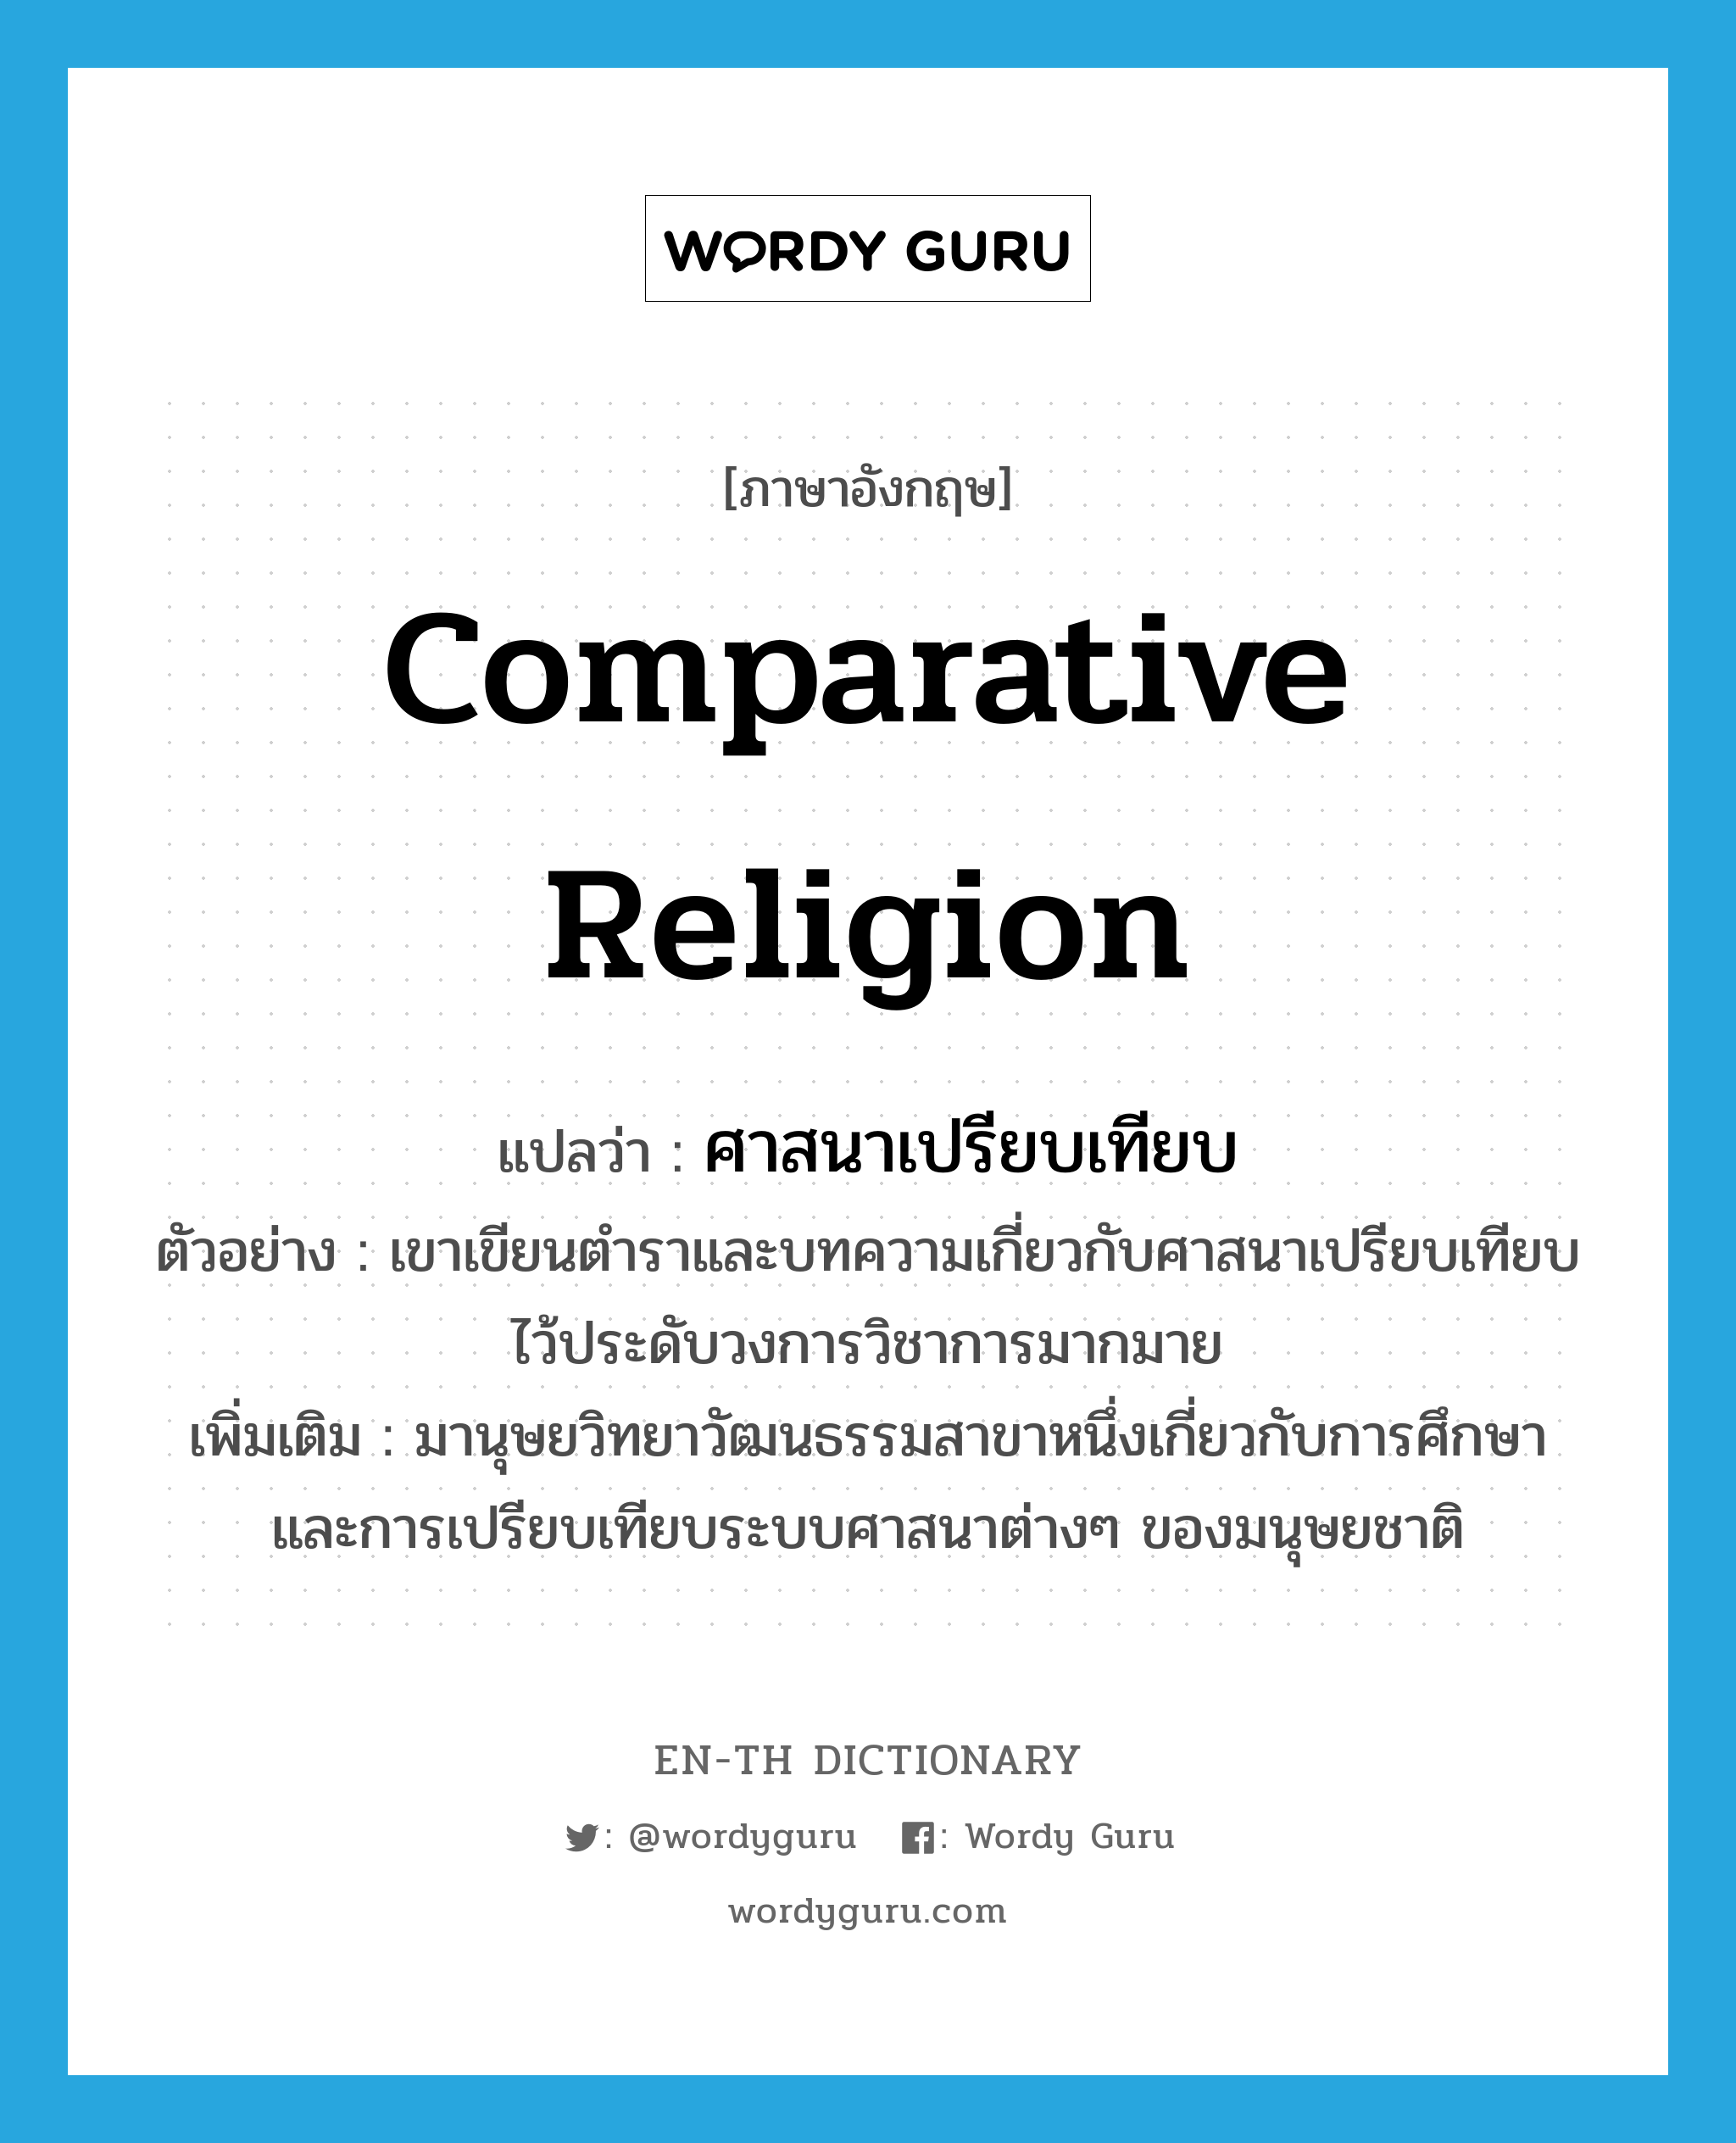 comparative religion แปลว่า?, คำศัพท์ภาษาอังกฤษ comparative religion แปลว่า ศาสนาเปรียบเทียบ ประเภท N ตัวอย่าง เขาเขียนตำราและบทความเกี่ยวกับศาสนาเปรียบเทียบไว้ประดับวงการวิชาการมากมาย เพิ่มเติม มานุษยวิทยาวัฒนธรรมสาขาหนึ่งเกี่ยวกับการศึกษาและการเปรียบเทียบระบบศาสนาต่างๆ ของมนุษยชาติ หมวด N